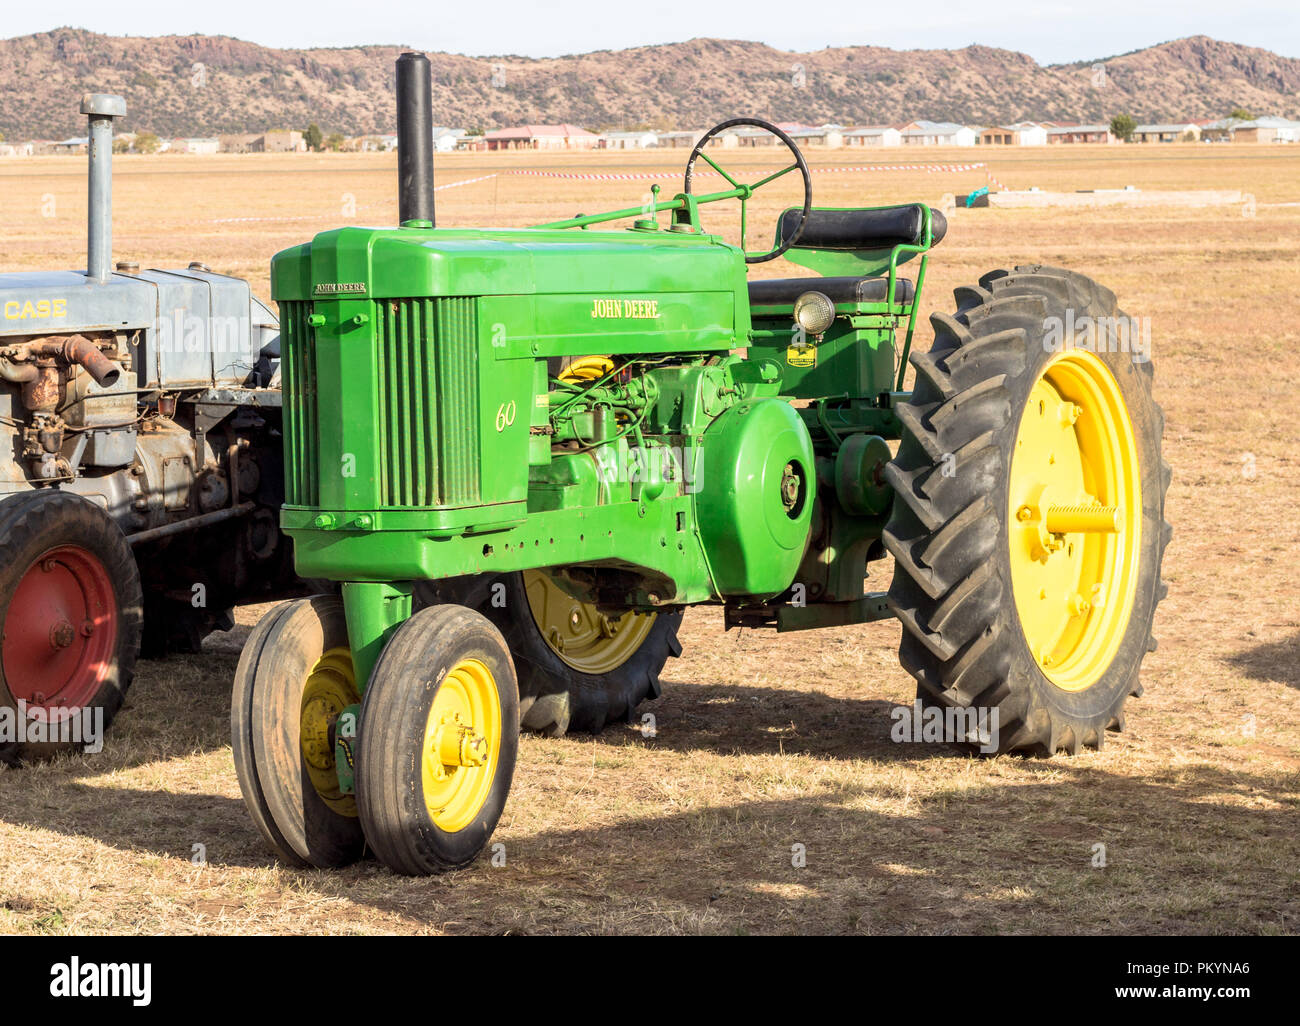 Queenstown, Südafrika, 17. Juni 2017: Vintage John Deere Traktor auf Anzeige an Queenstown Air Show - Illustrative editorial Bild Stockfoto